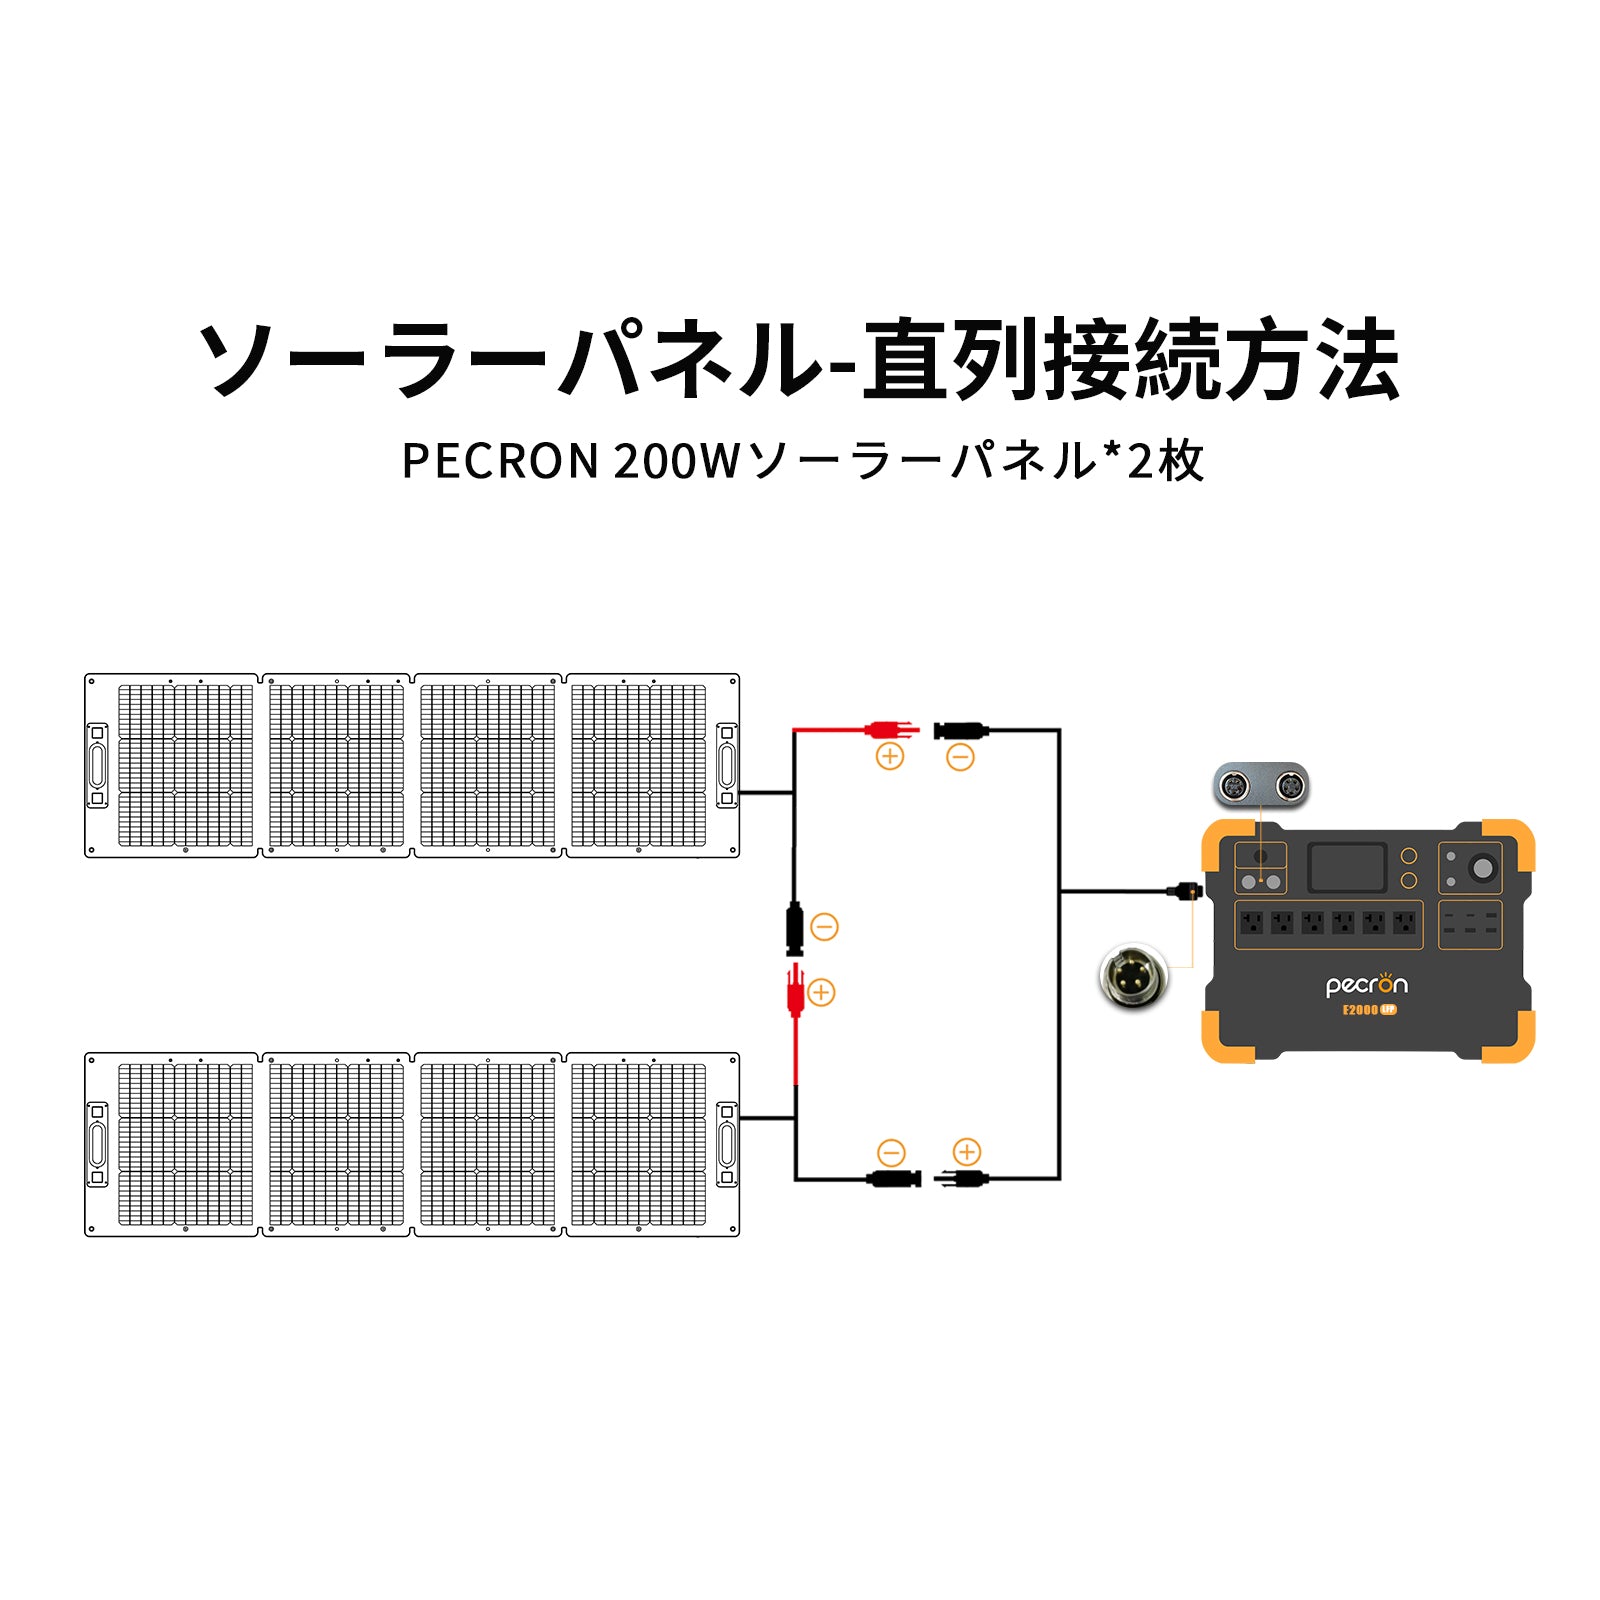 PECRON 200W ソーラーパネル 38.8V【新版】